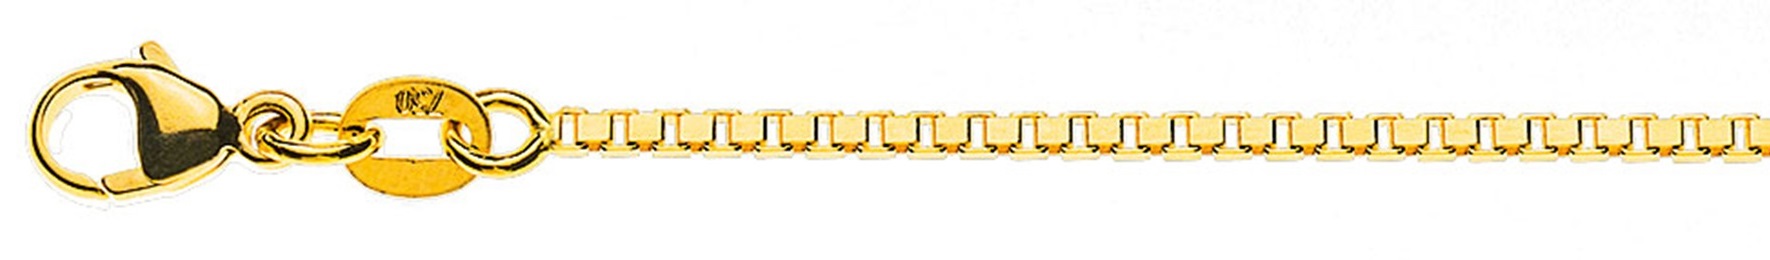 AURONOS Prestige Halskette Gelbgold 18K Venezianerkette diamantiert 45cm 1.4mm